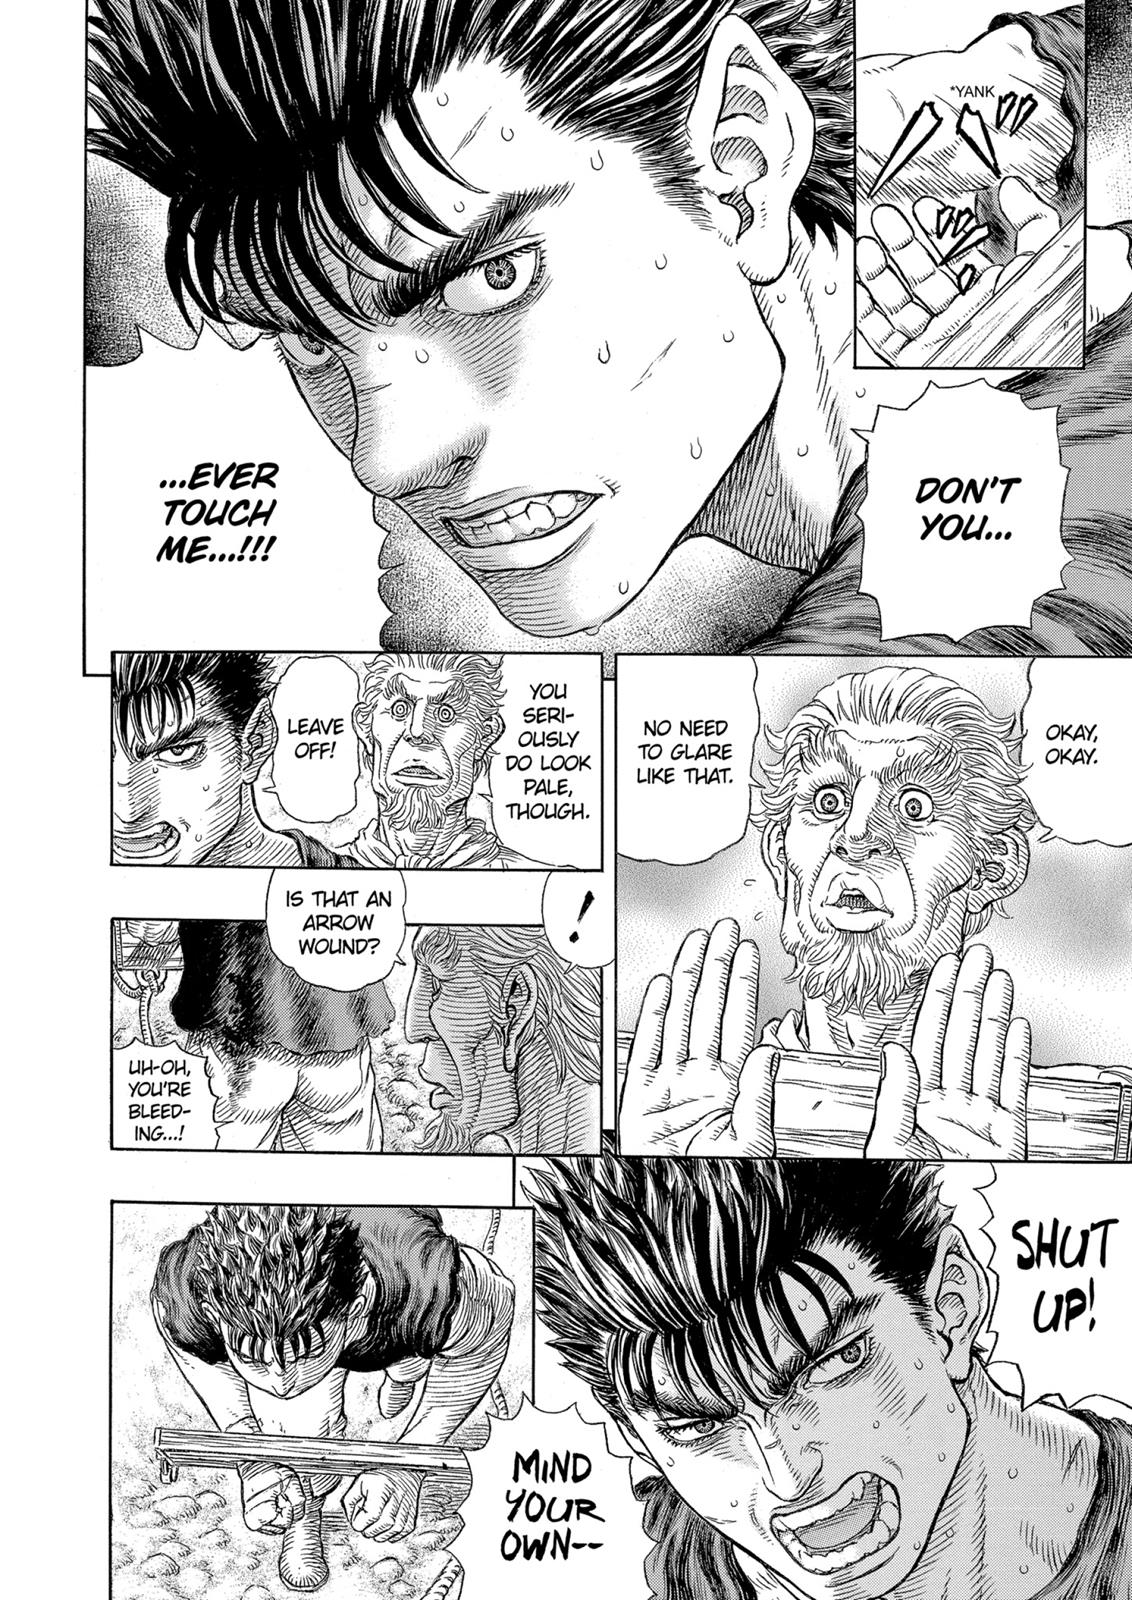 Berserk Manga Chapter 329 image 05